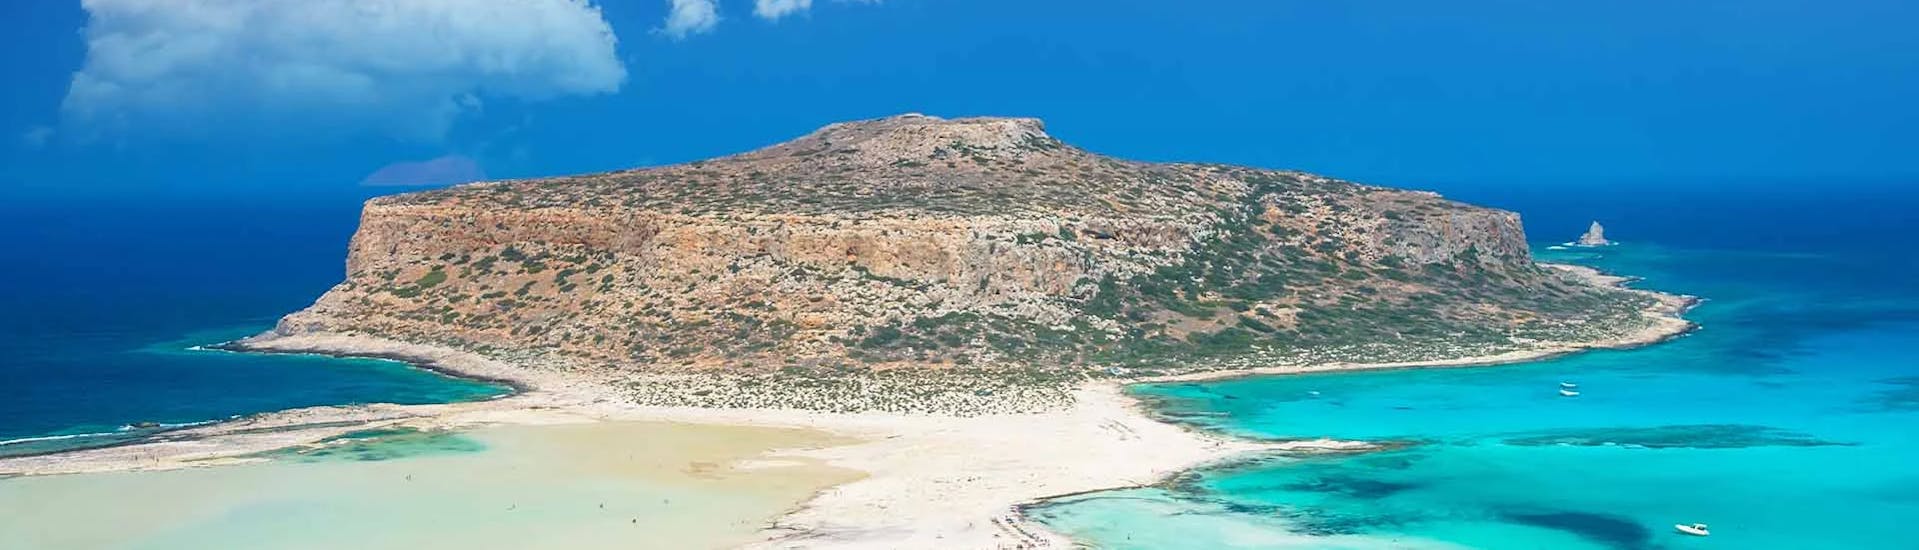 L'île de Gramvousa peut être admirée lors de l'excursion en bateau semi-rigide privé de Falasarna à la lagune de Balos et Gramvousa.